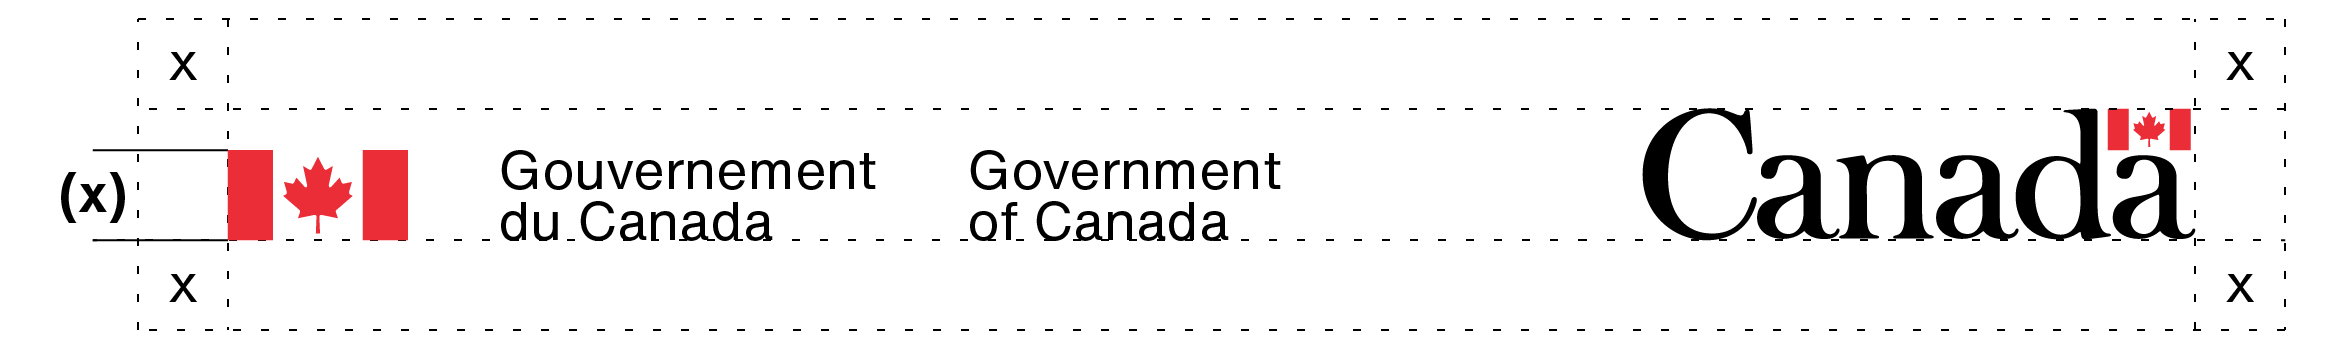 L’espace libre autour de la signature du gouvernement du Canada et du mot-symbole « Canada ». Cet espace libre à laisser est expliqué dans le texte ci-dessus.